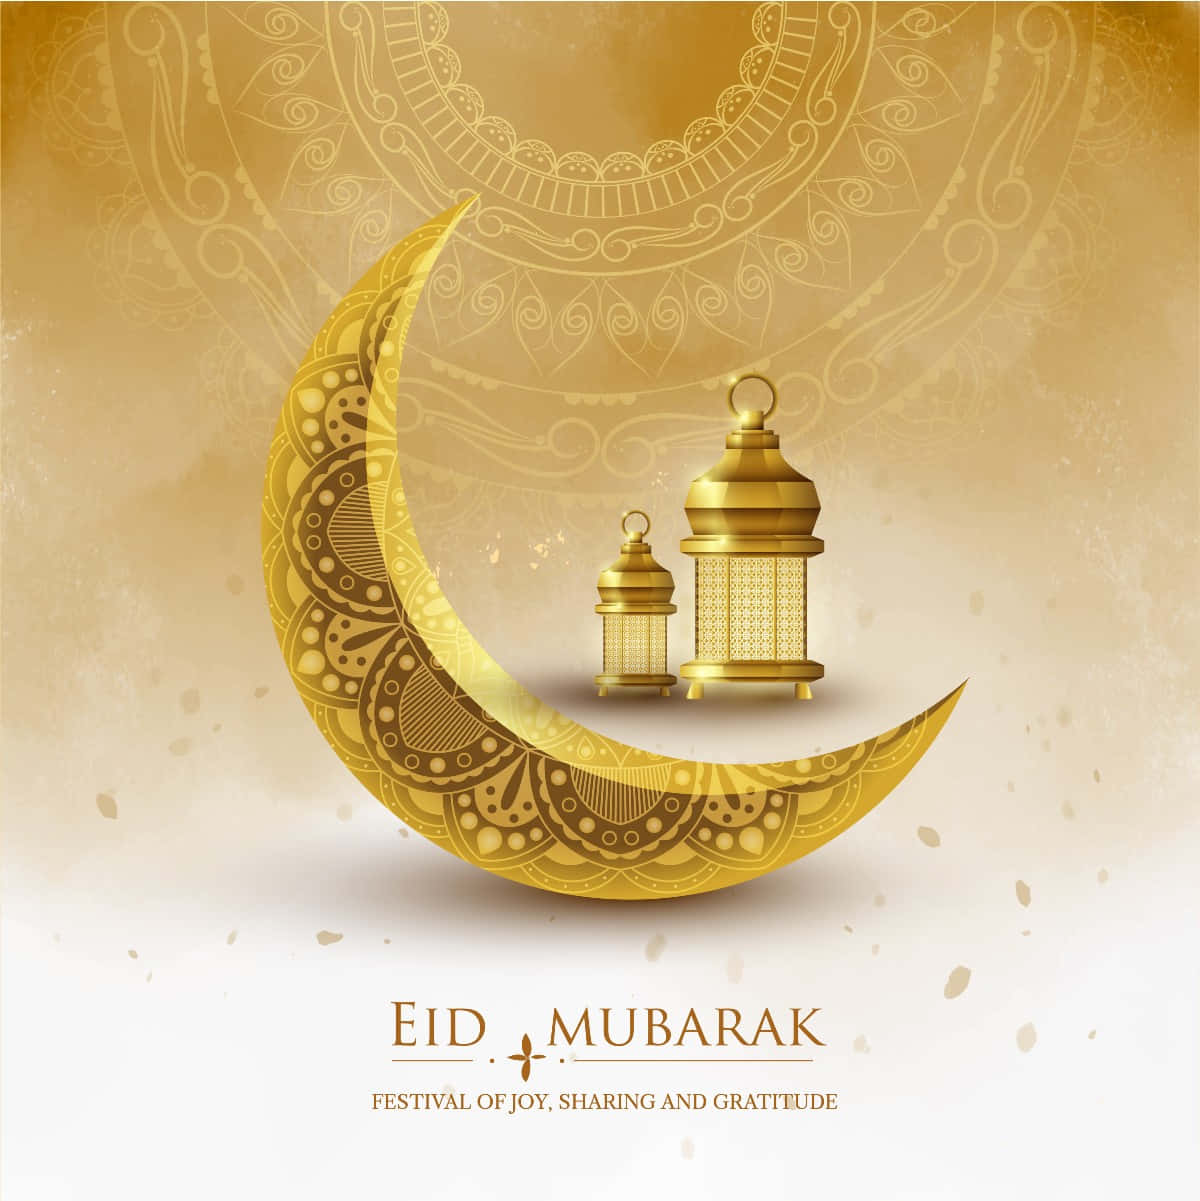 Wishing you Eid Mubarak!